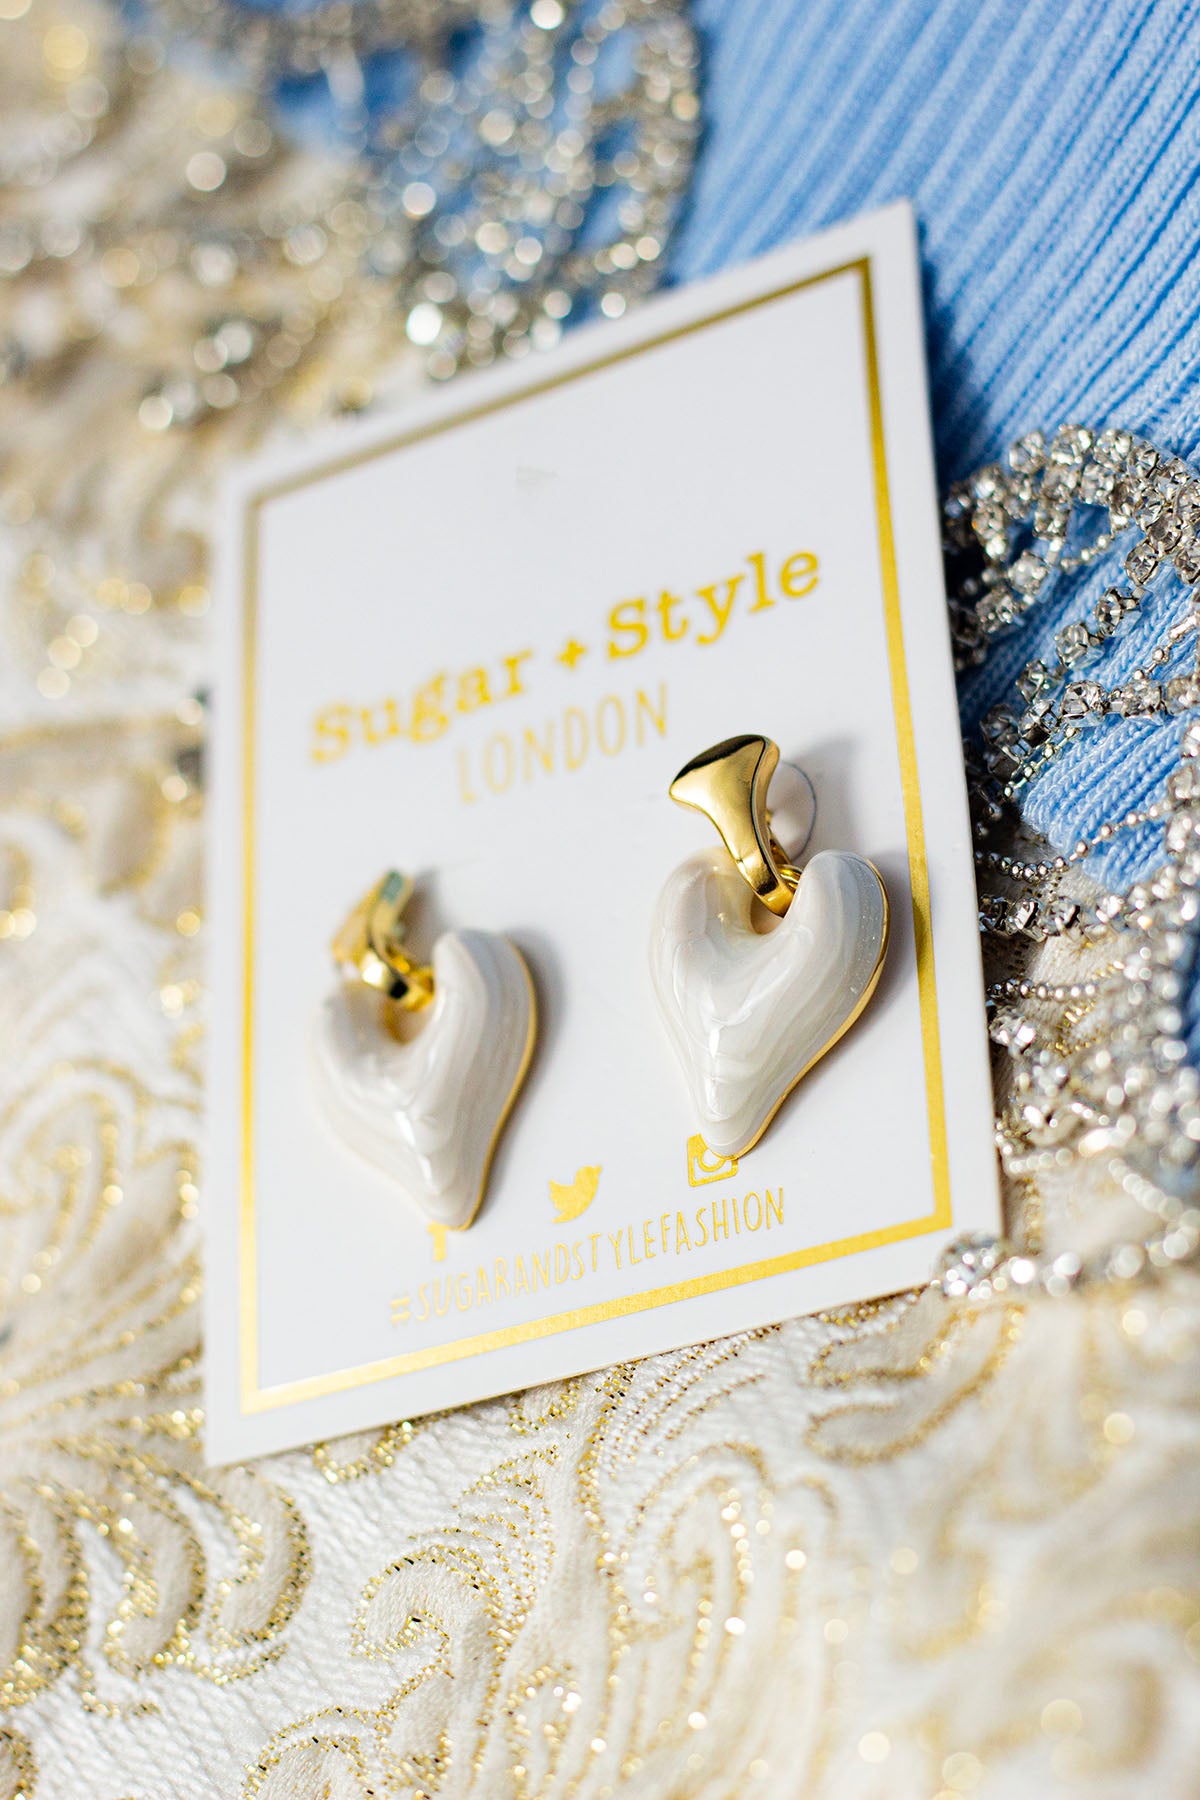 Drop Heart Dangle Earrings - Sugar + Style